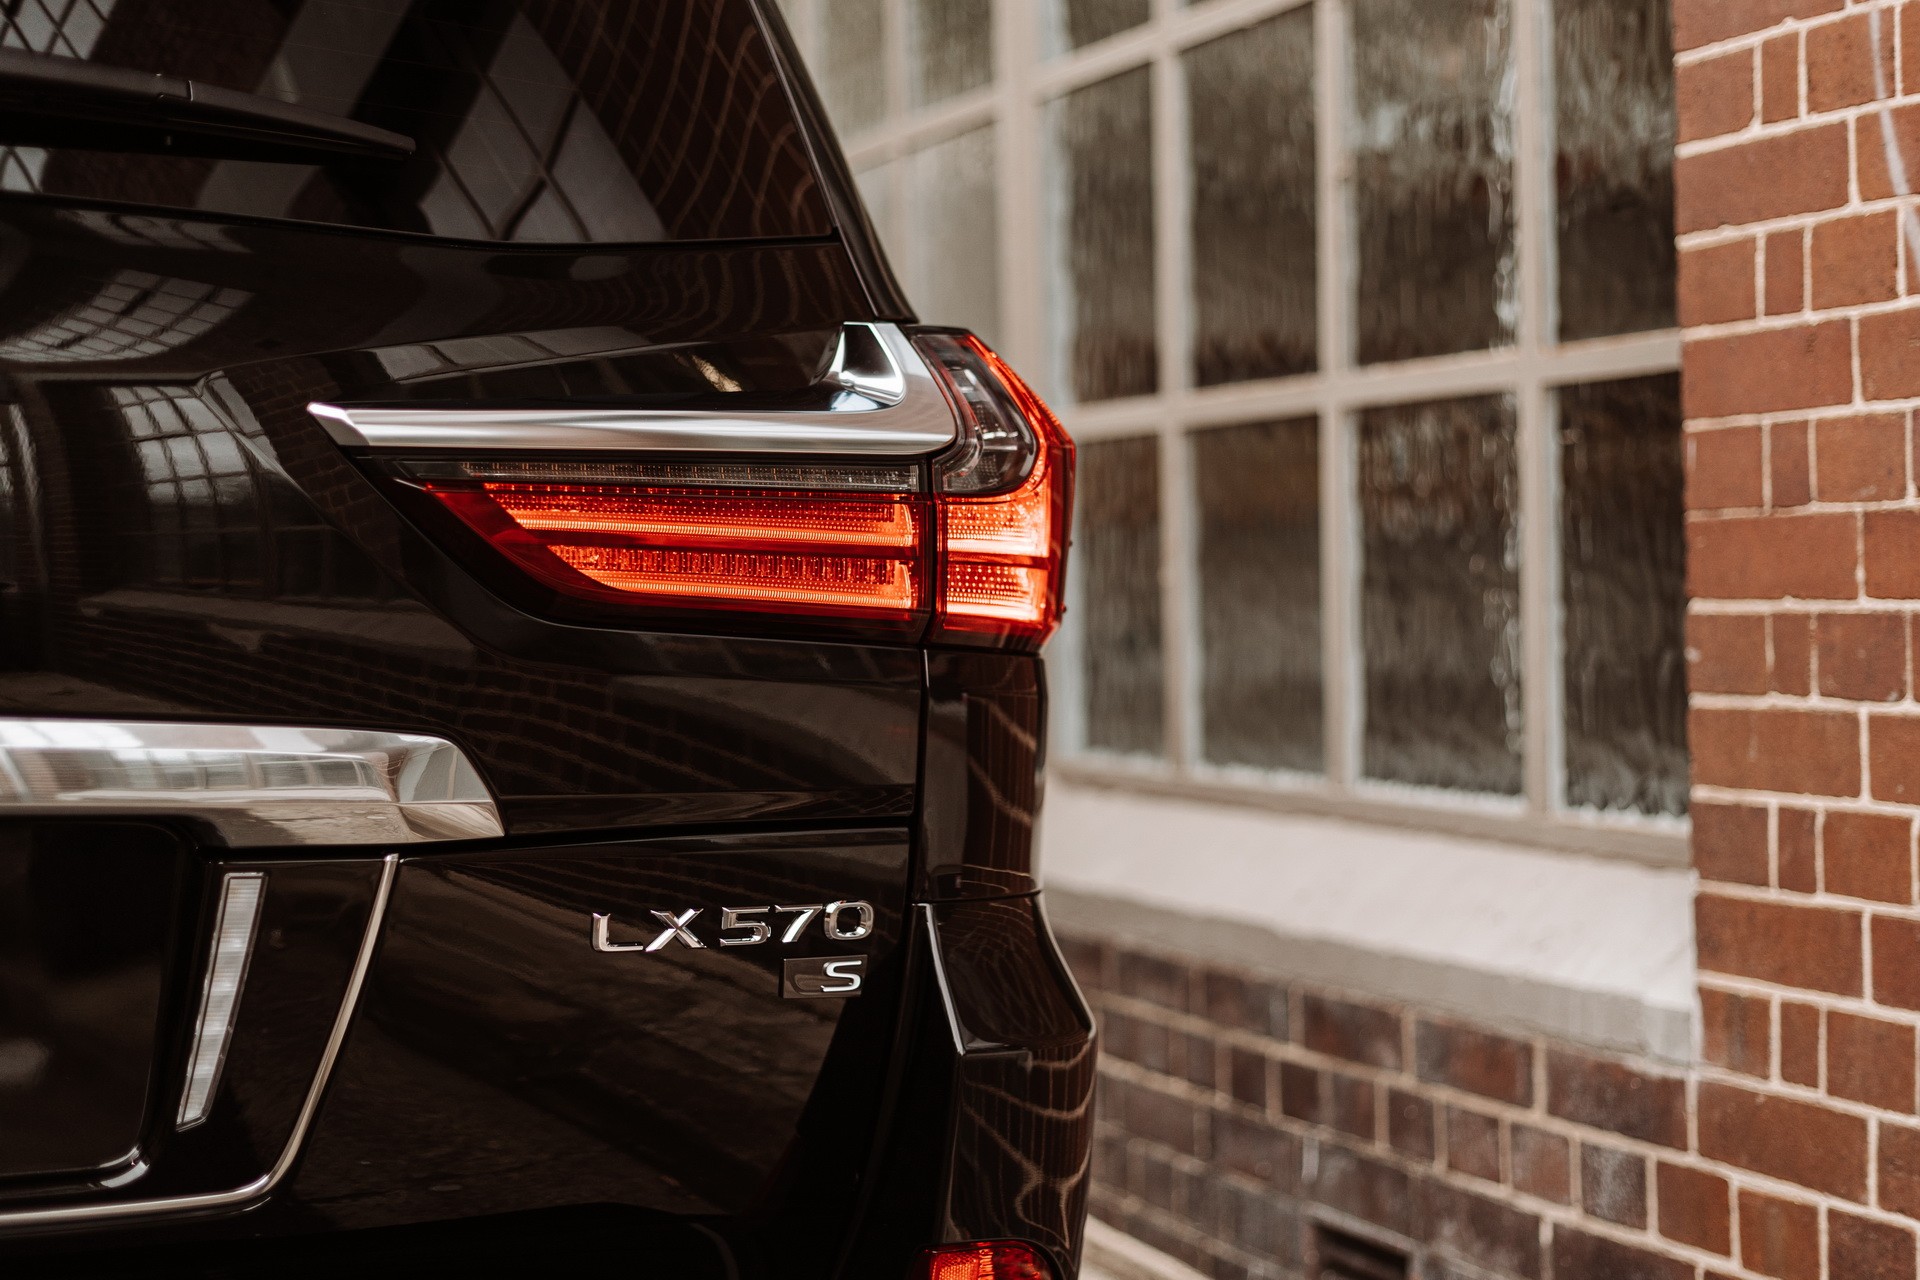 Đánh giá xe Lexus LX570 S 2022: Những cải tiến cho mẫu SUV hạng sang thương hiệu Nhật Bản